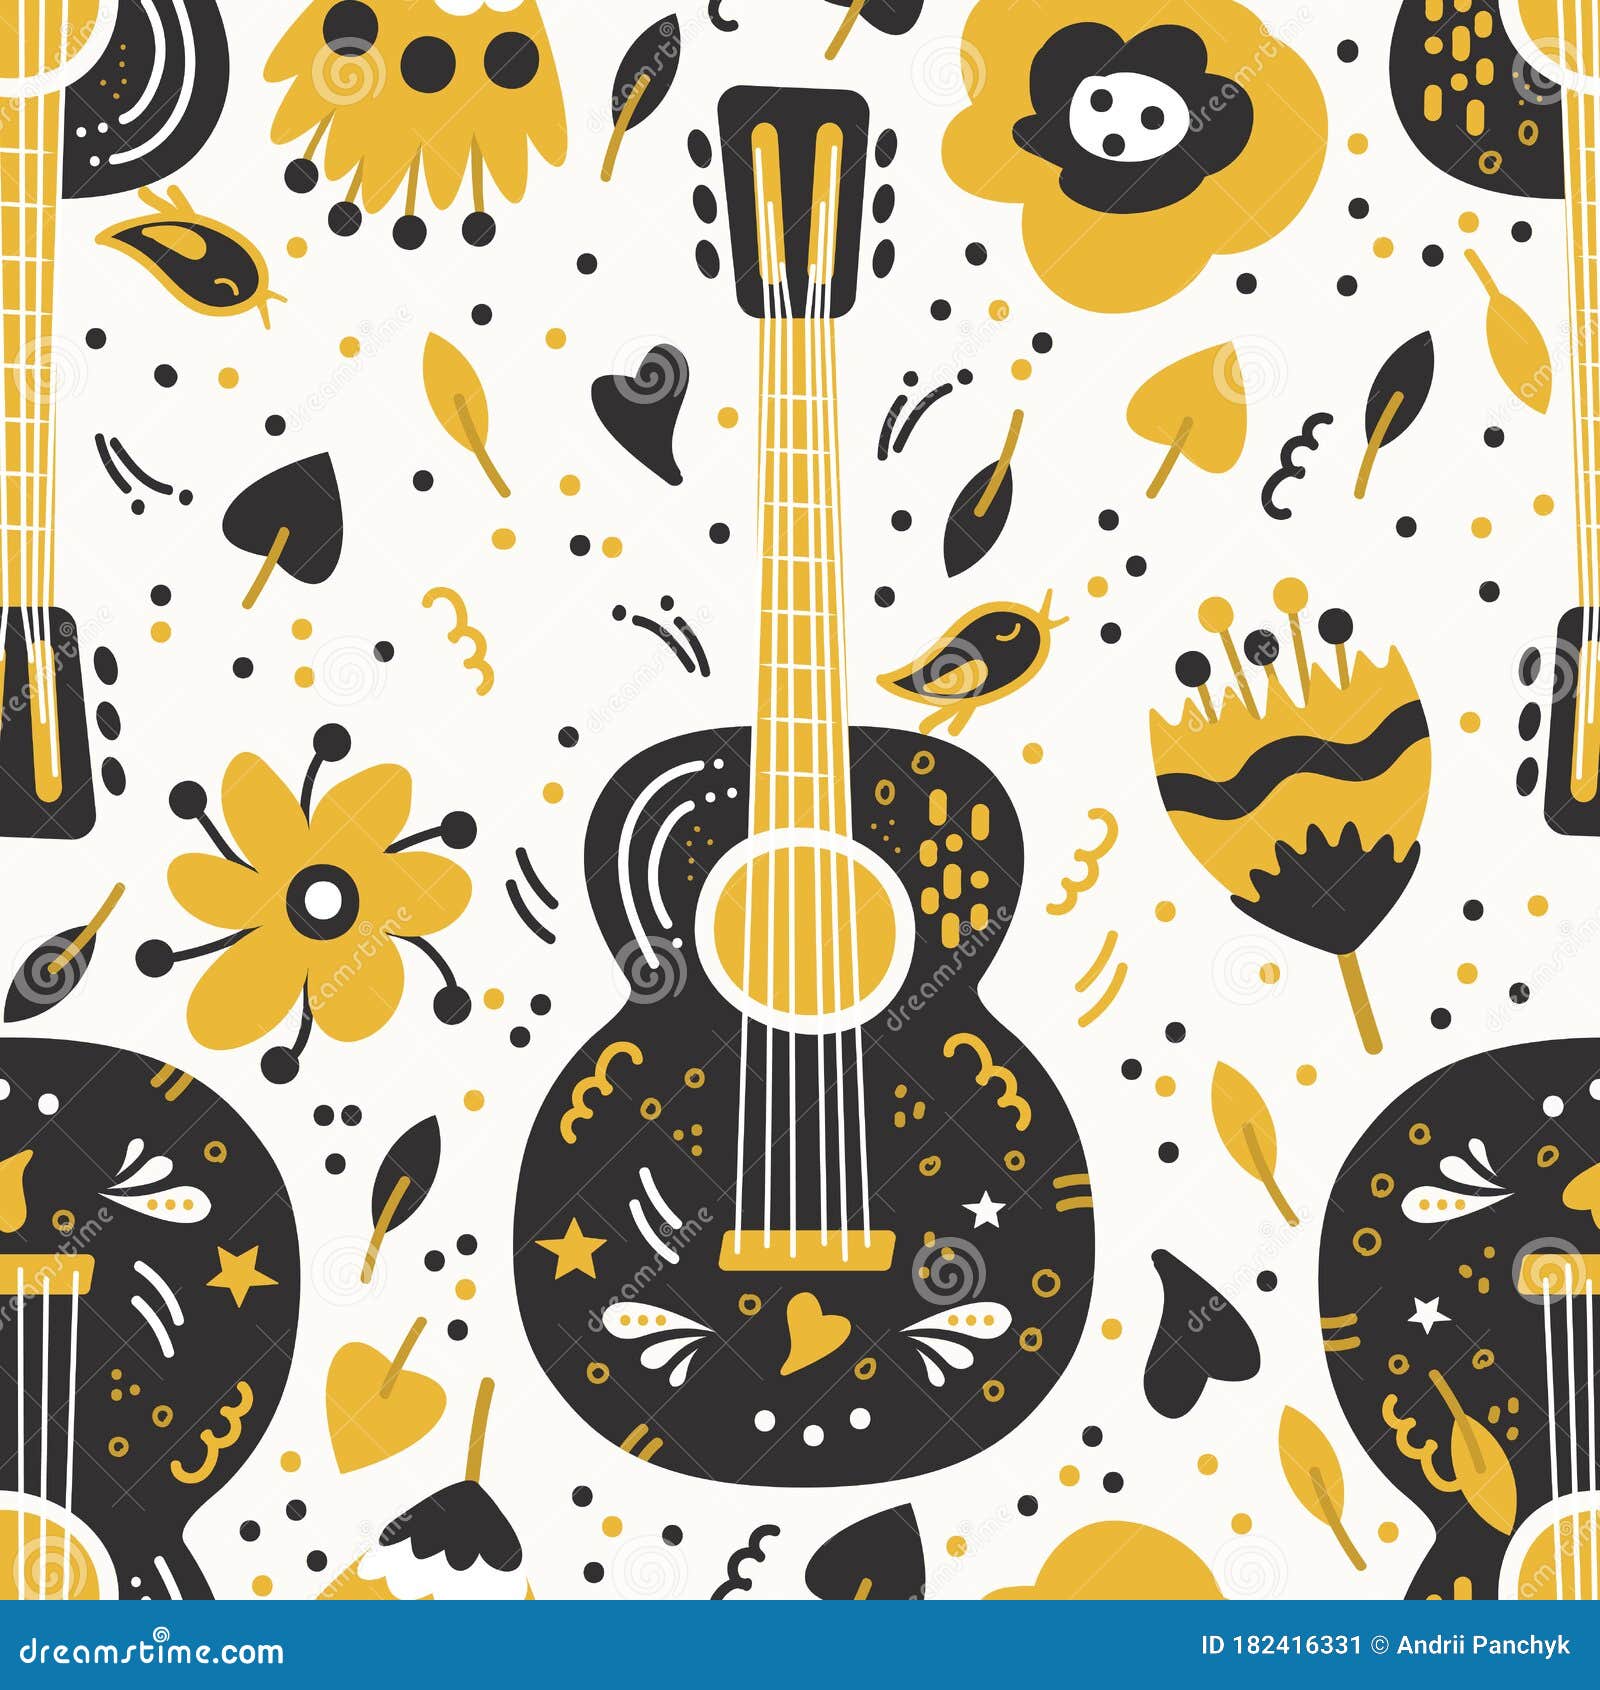 Guitar Art Wallpapers - Top Những Hình Ảnh Đẹp